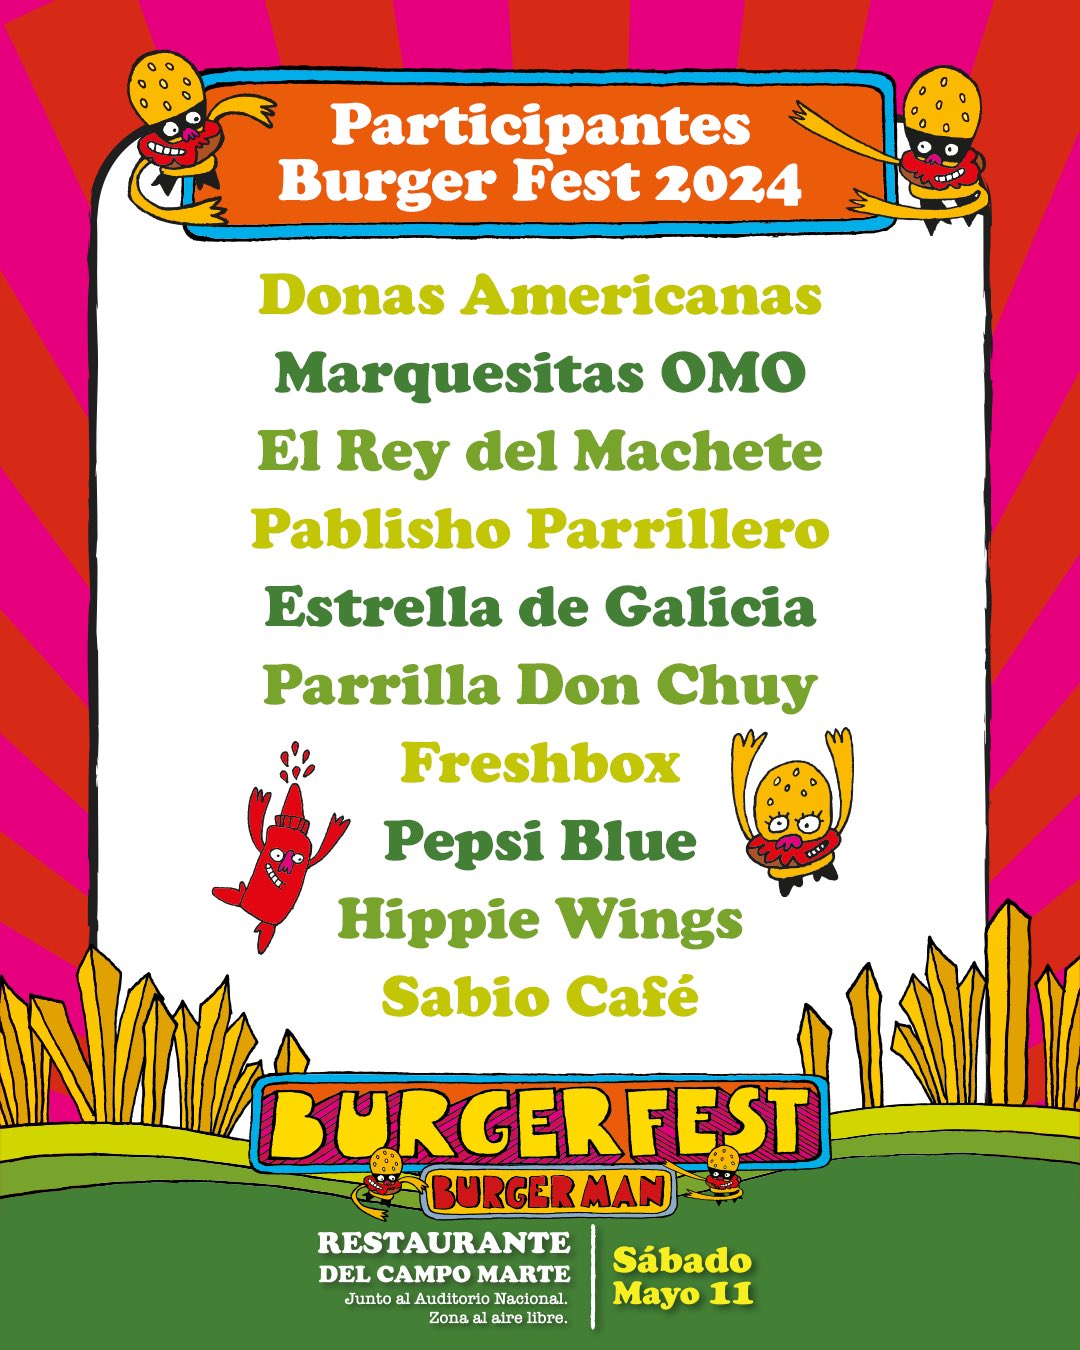 Burger Fest 2024 tendrá más de 30 restaurantes presentes 18